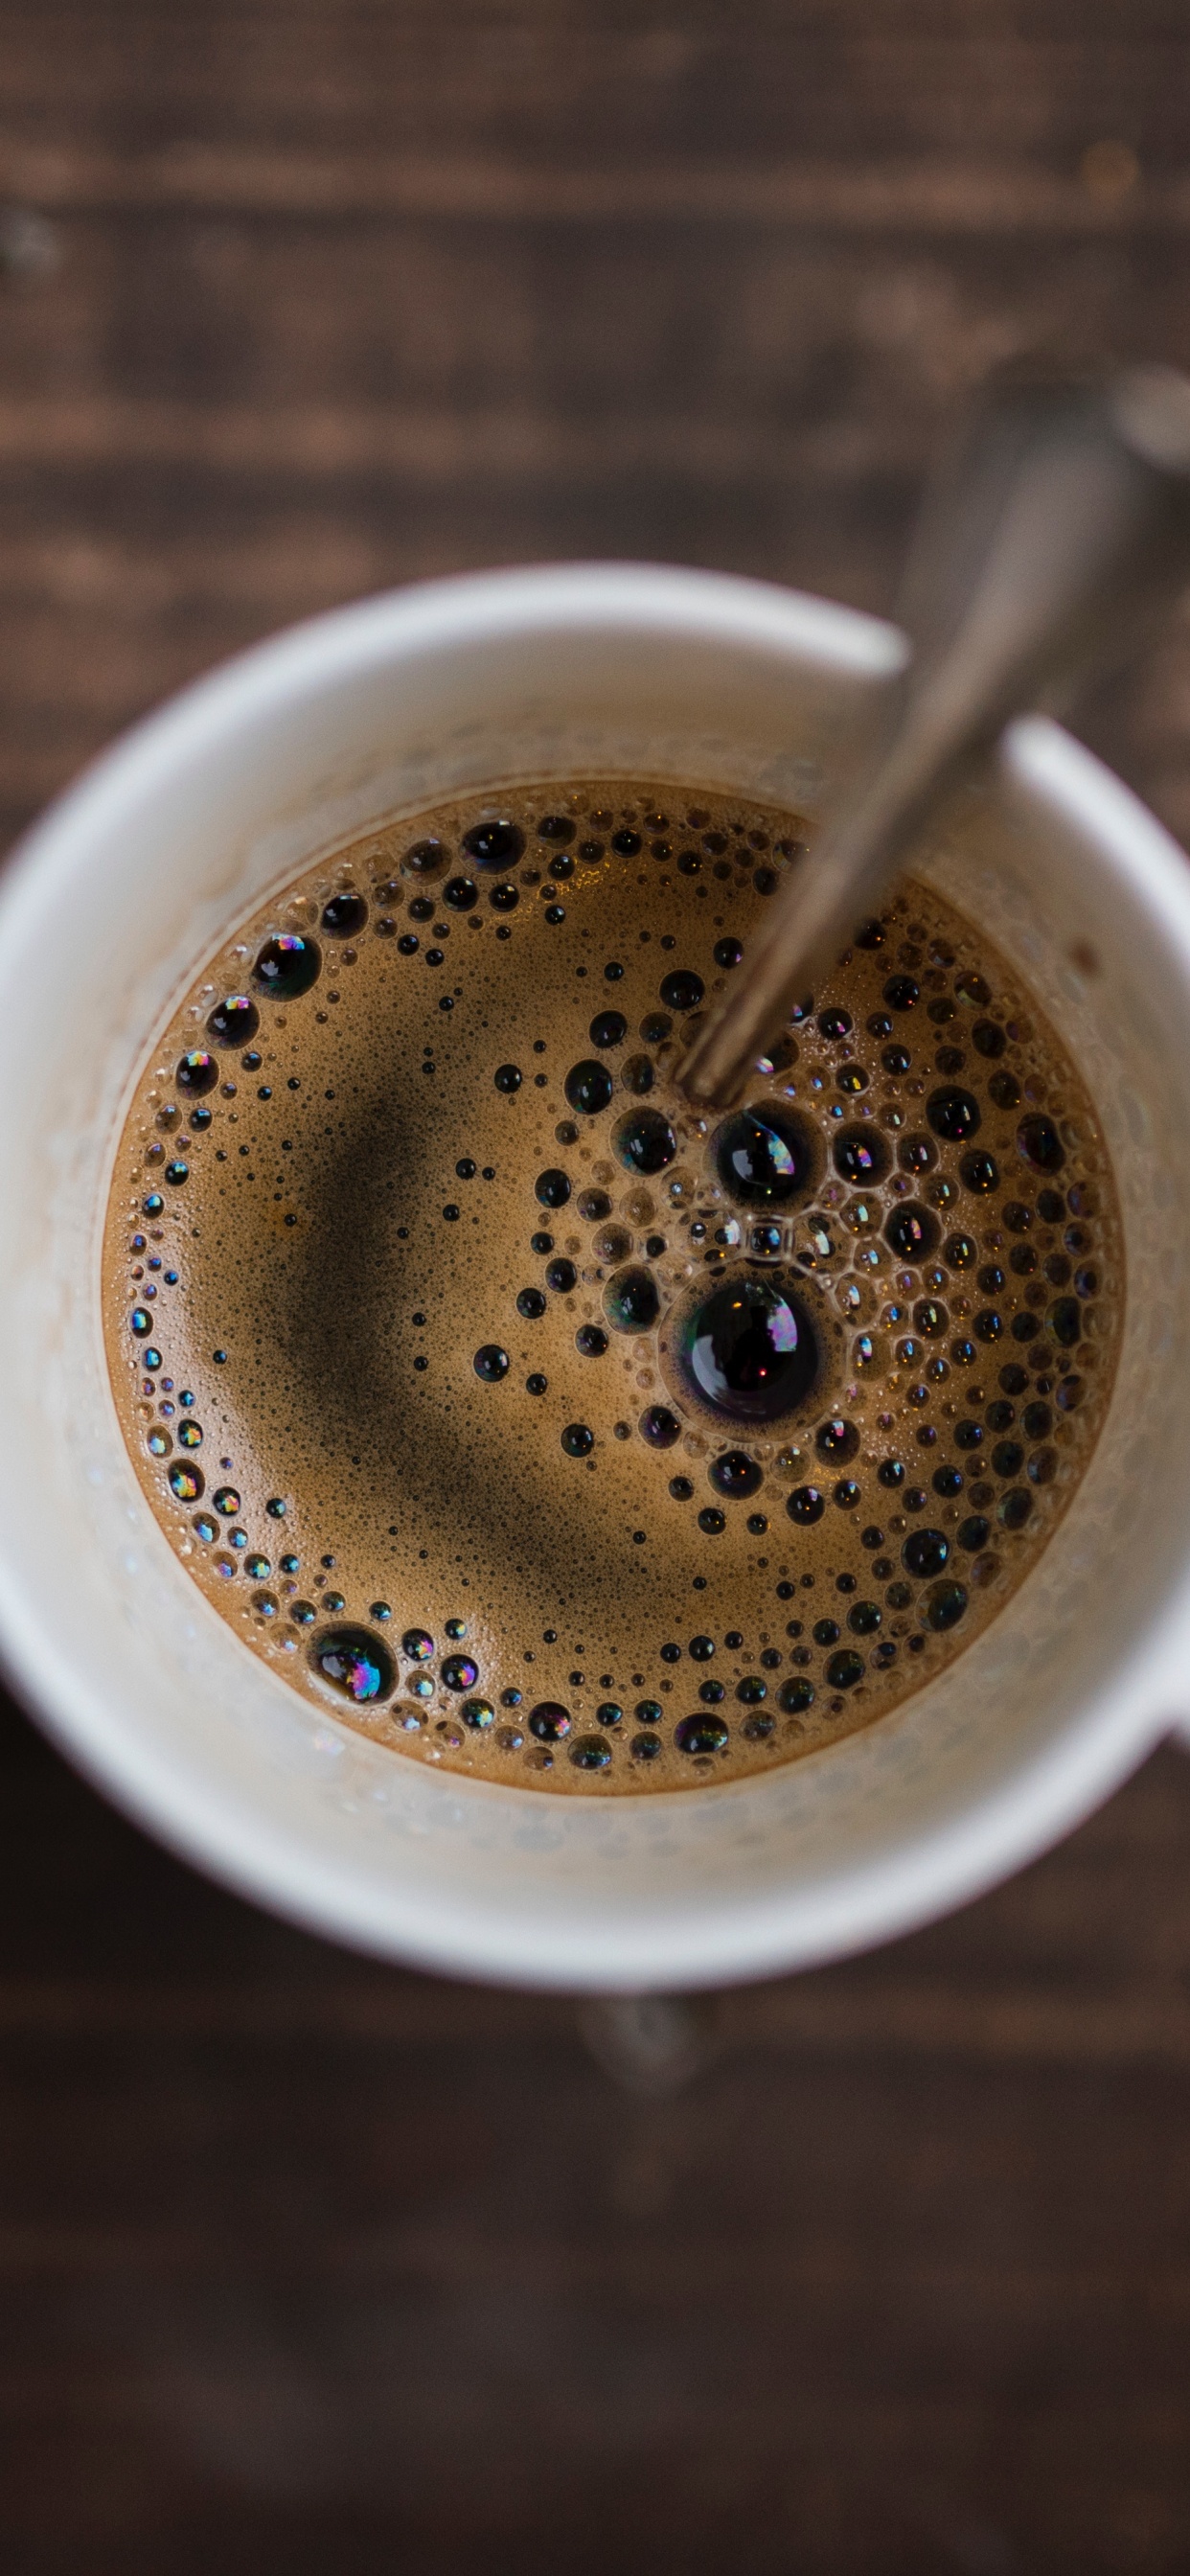 速溶咖啡, 咖啡馆, 咖啡因, 咖啡杯, 浓缩咖啡 壁纸 1242x2688 允许